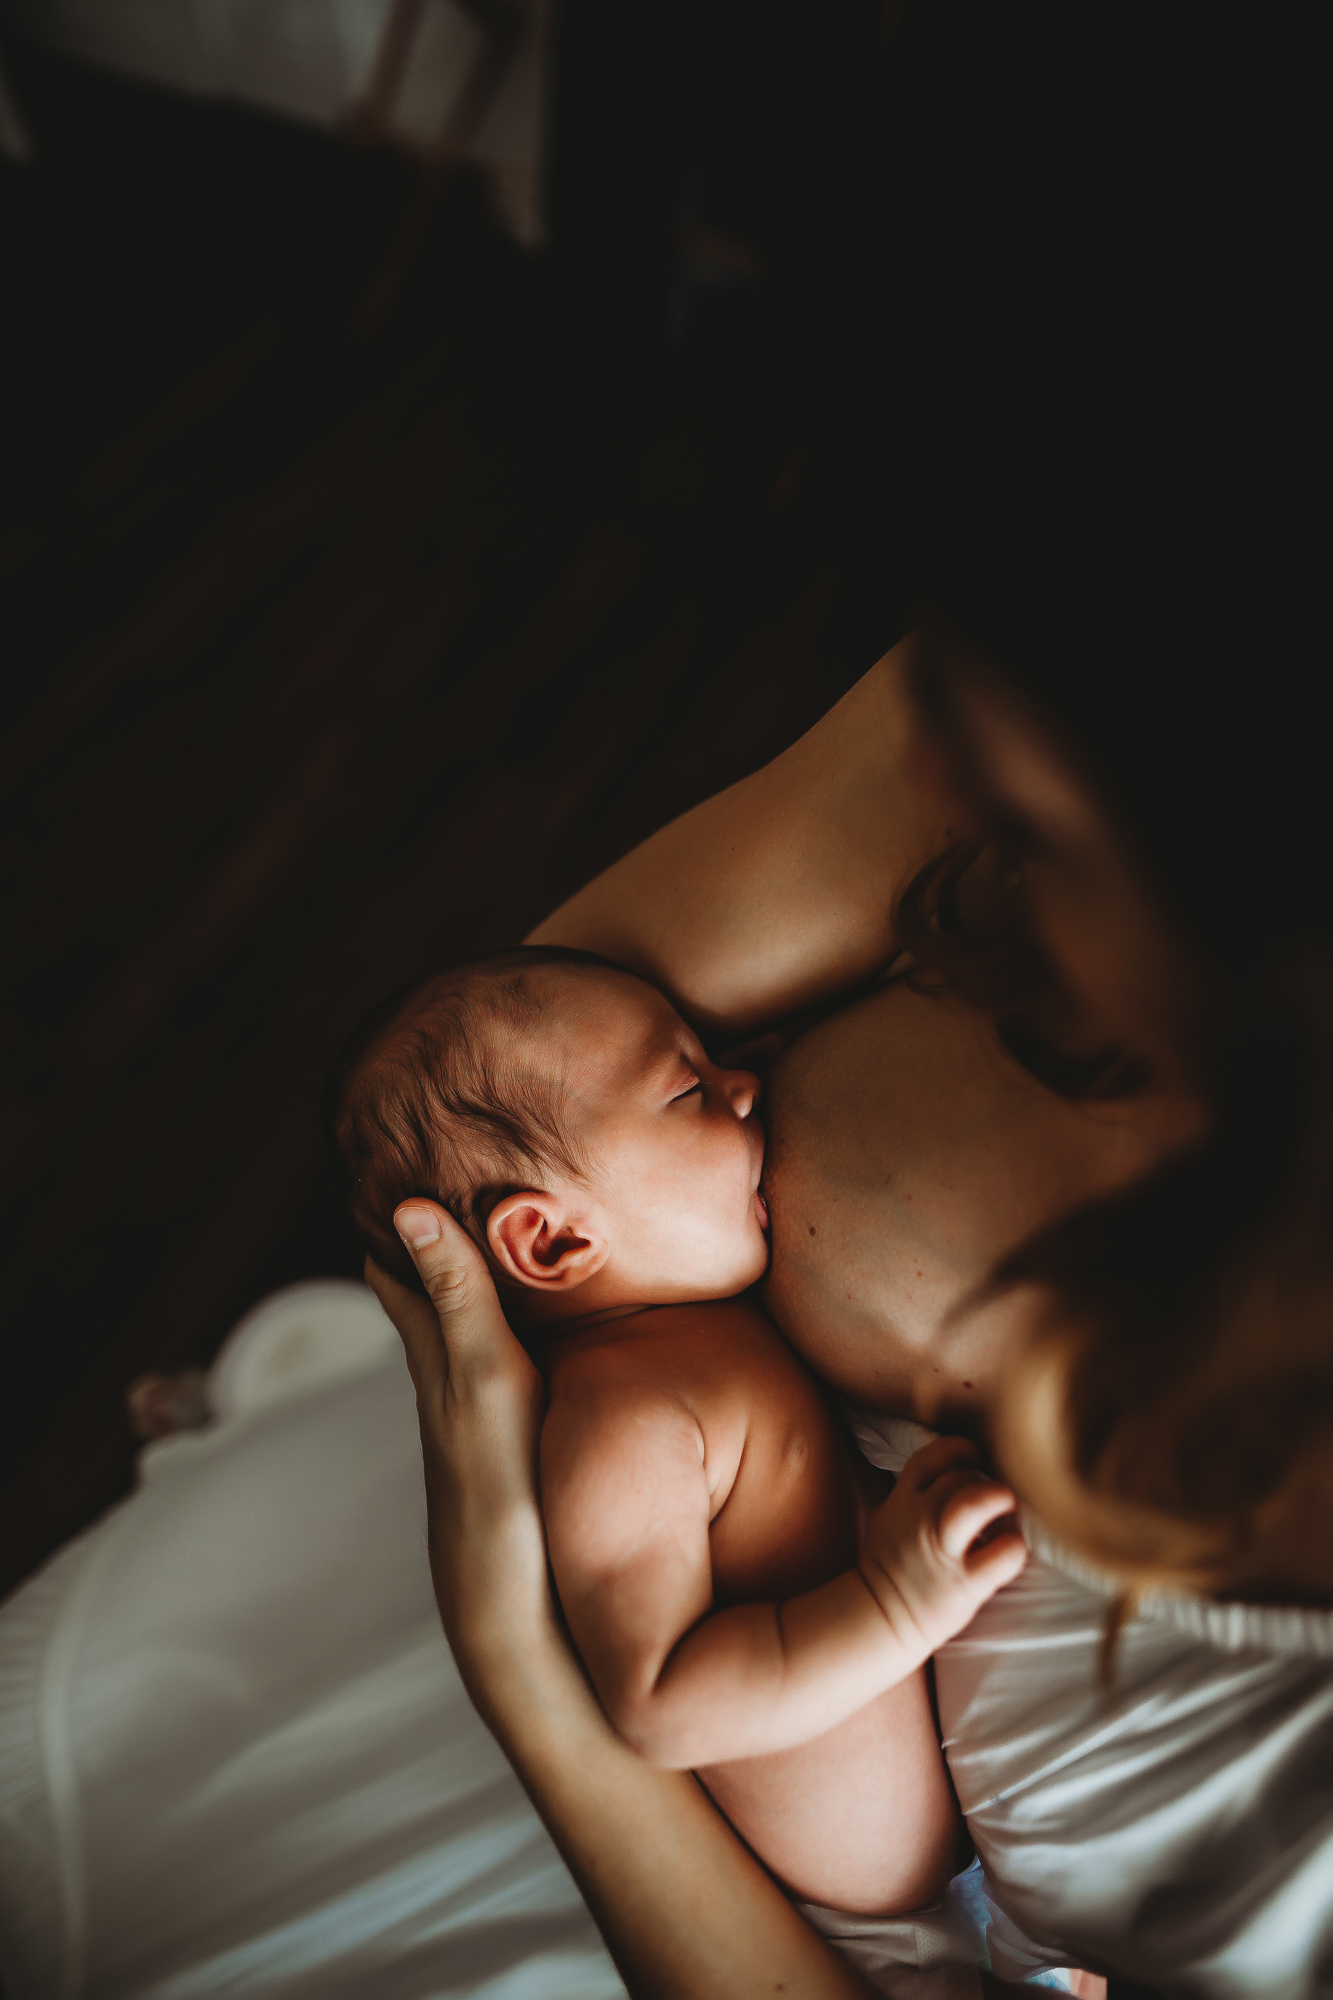 breastfeeding a newborn, st pete fl 